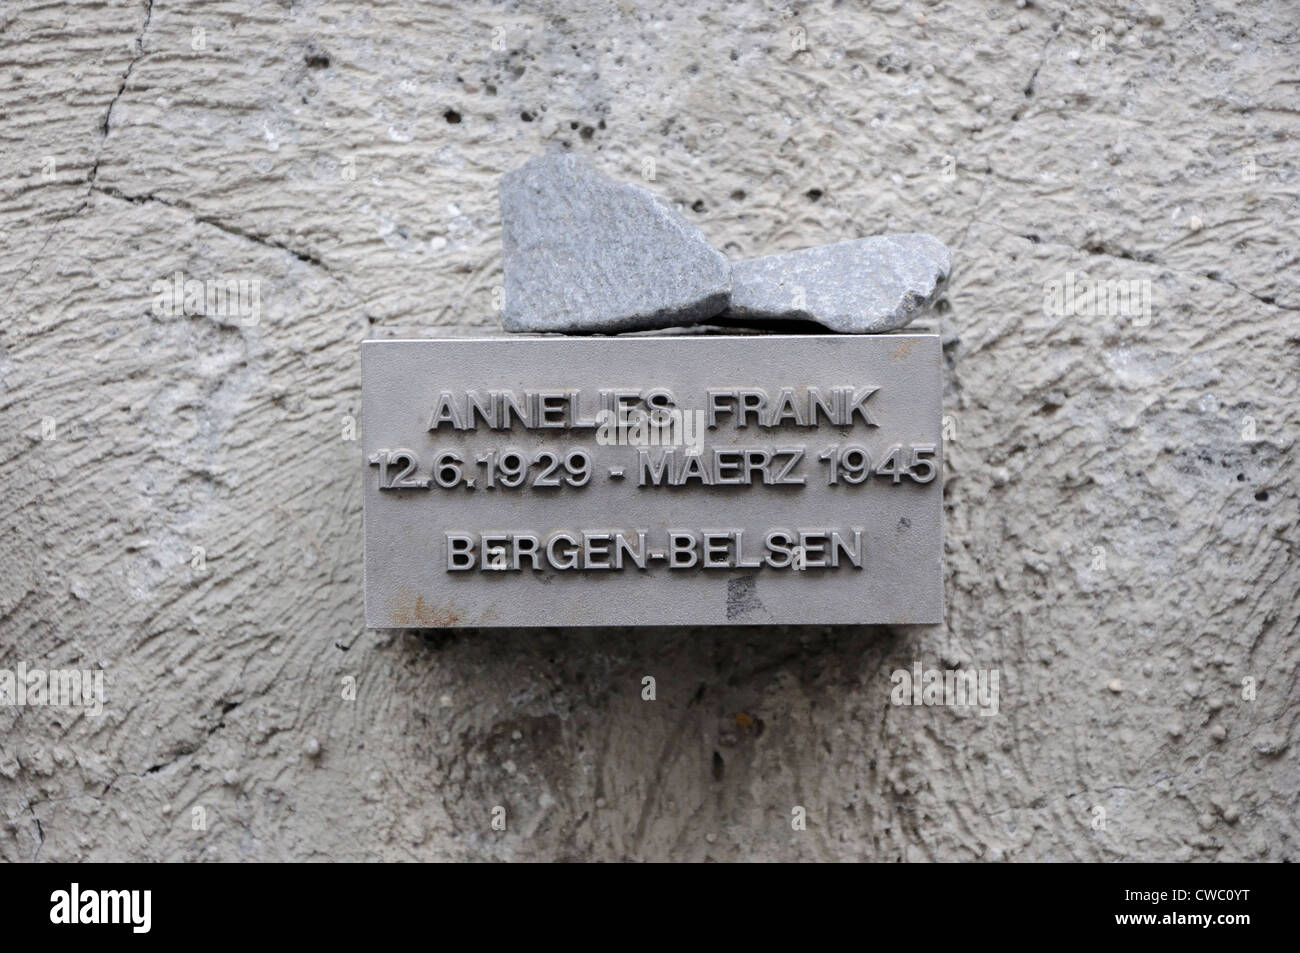 Memoriale di Anne Frank che è nato a Francoforte in Germania nel 1929 e morì a Bergen-Belsen campo di concentramento in 1945. Foto Stock